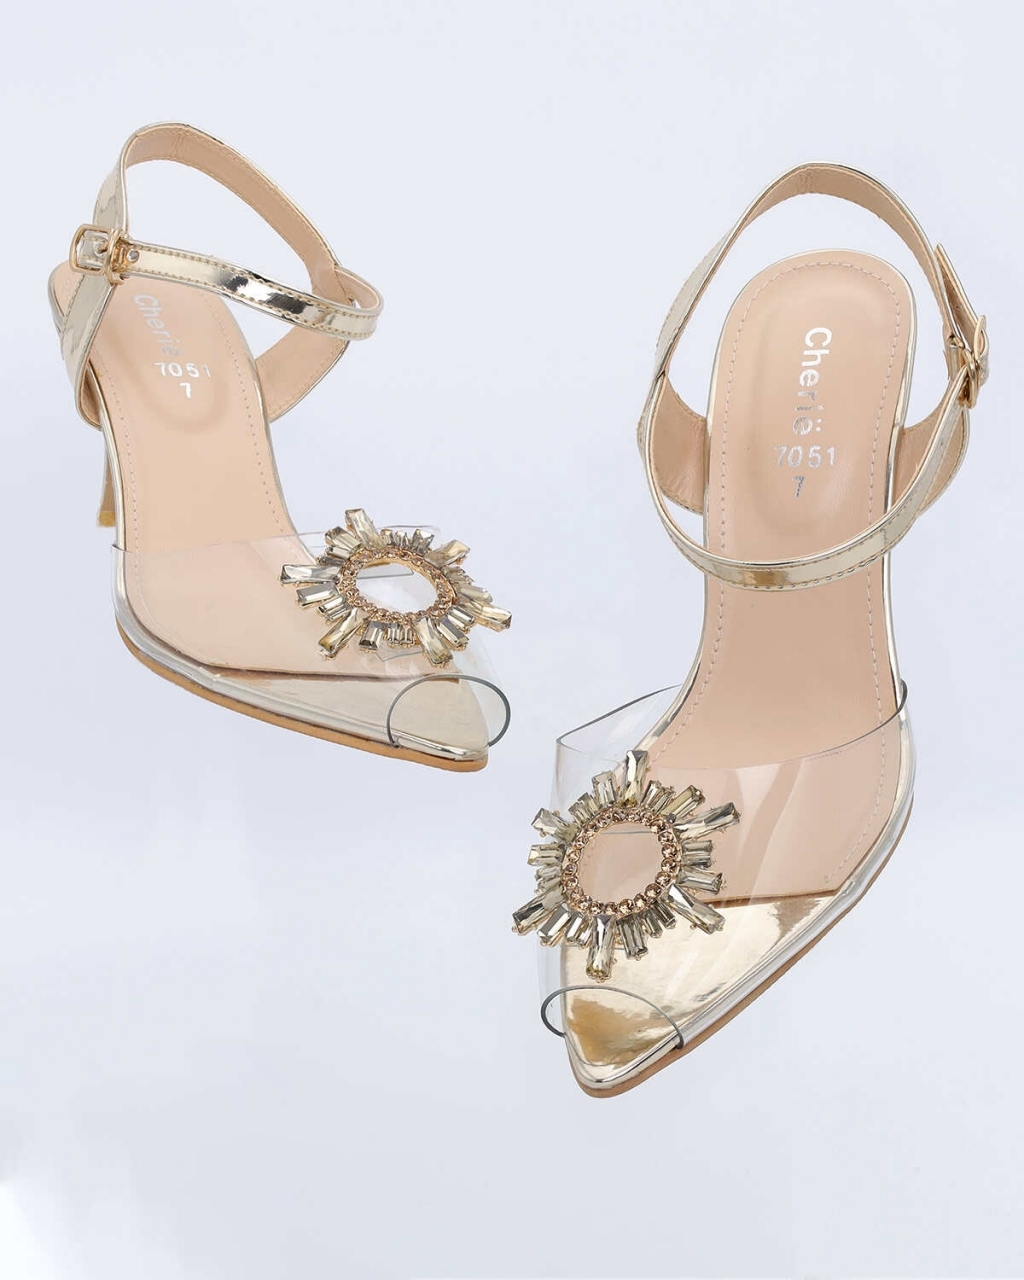 Buy Marc Loire Women's Black Peep Toe Block Heels Fashion Sandals, 3 UK at  Amazon.in